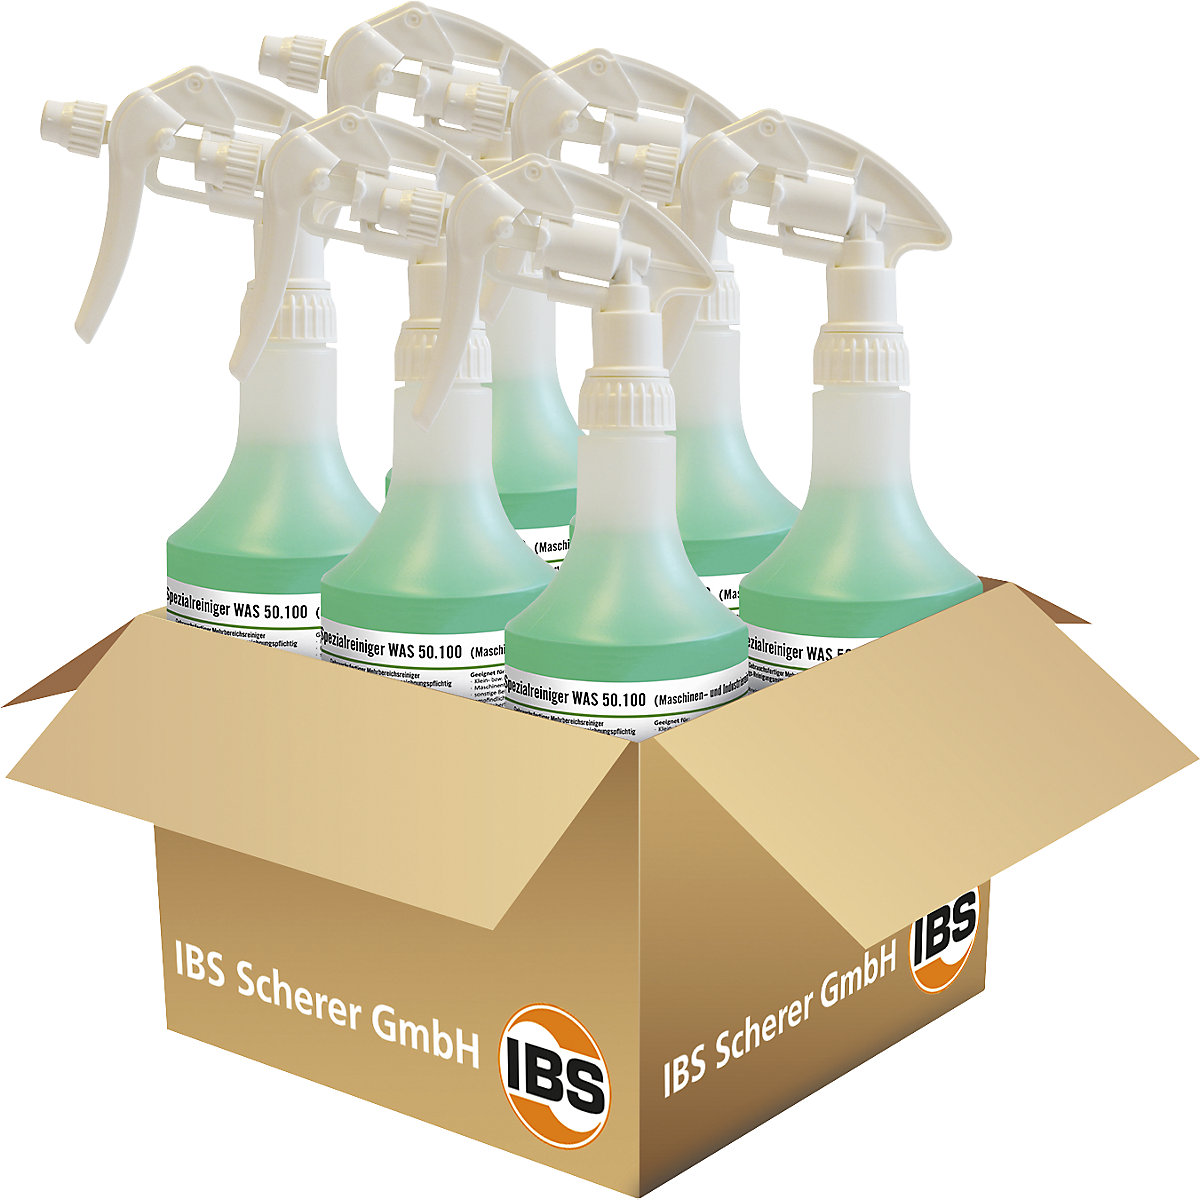 Detergente industriale/per macchine WAS 50.100 – IBS Scherer